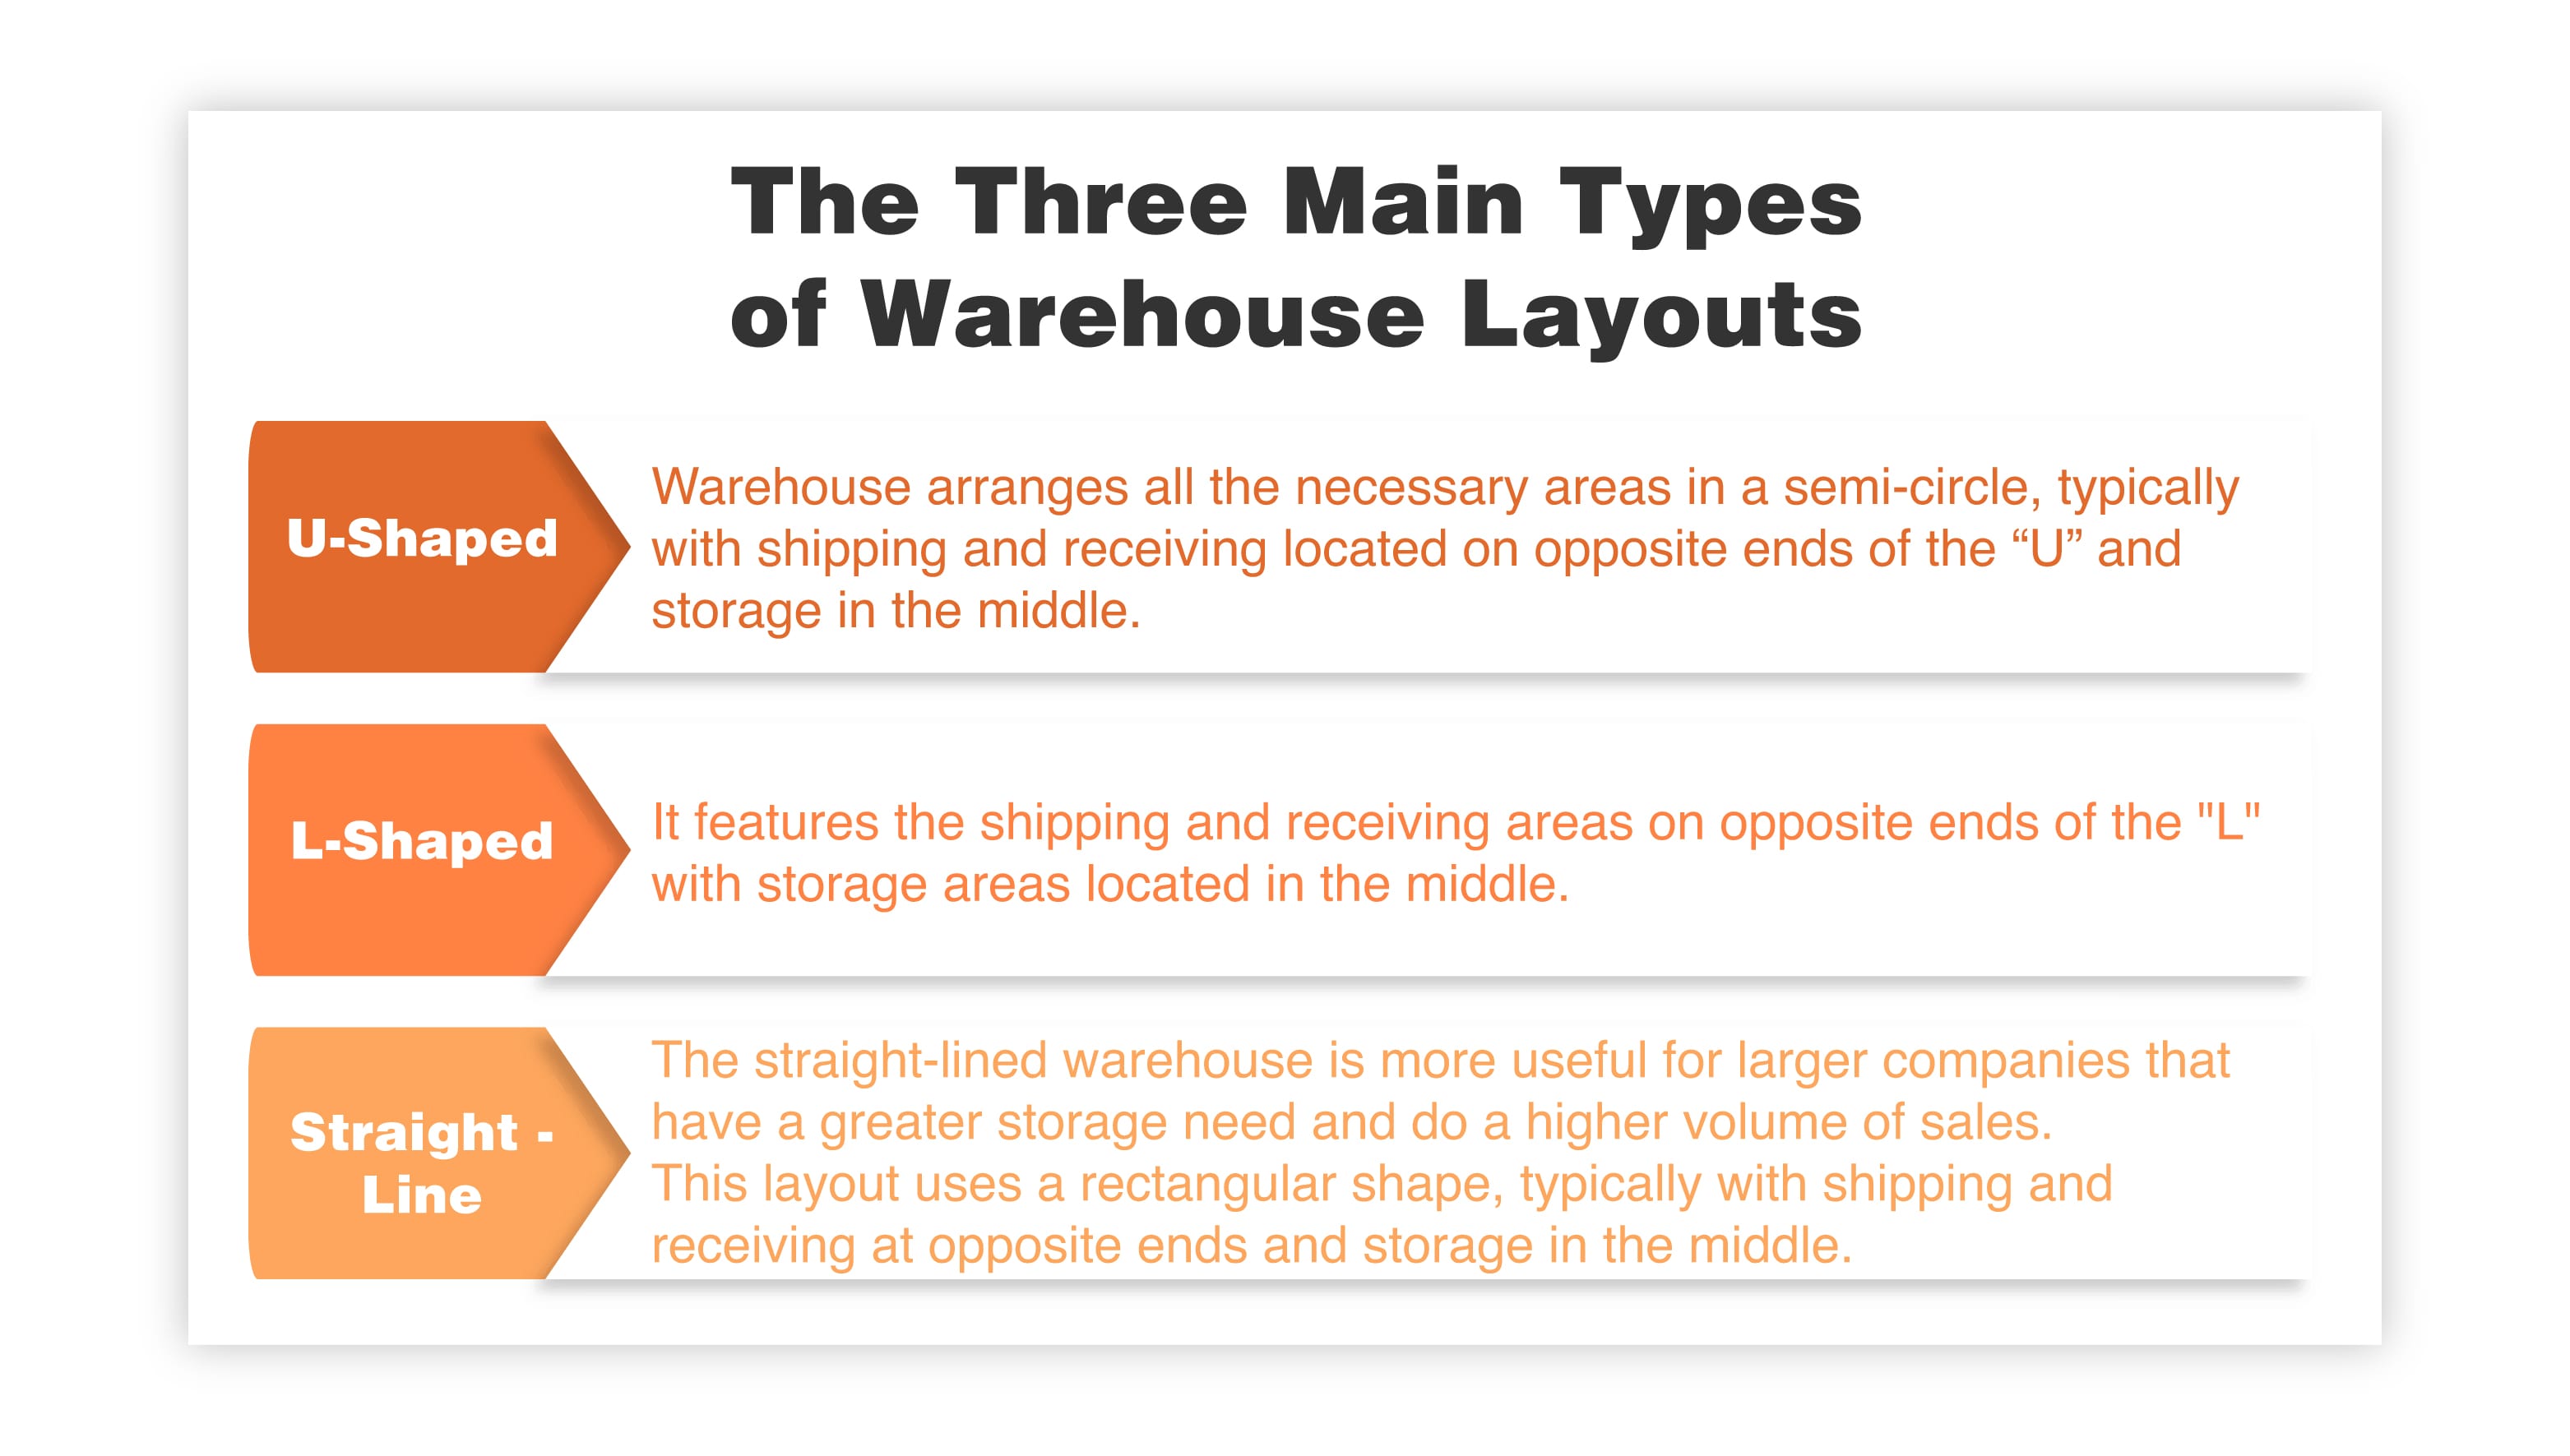 The Three Main Types of Warehouse Layouts